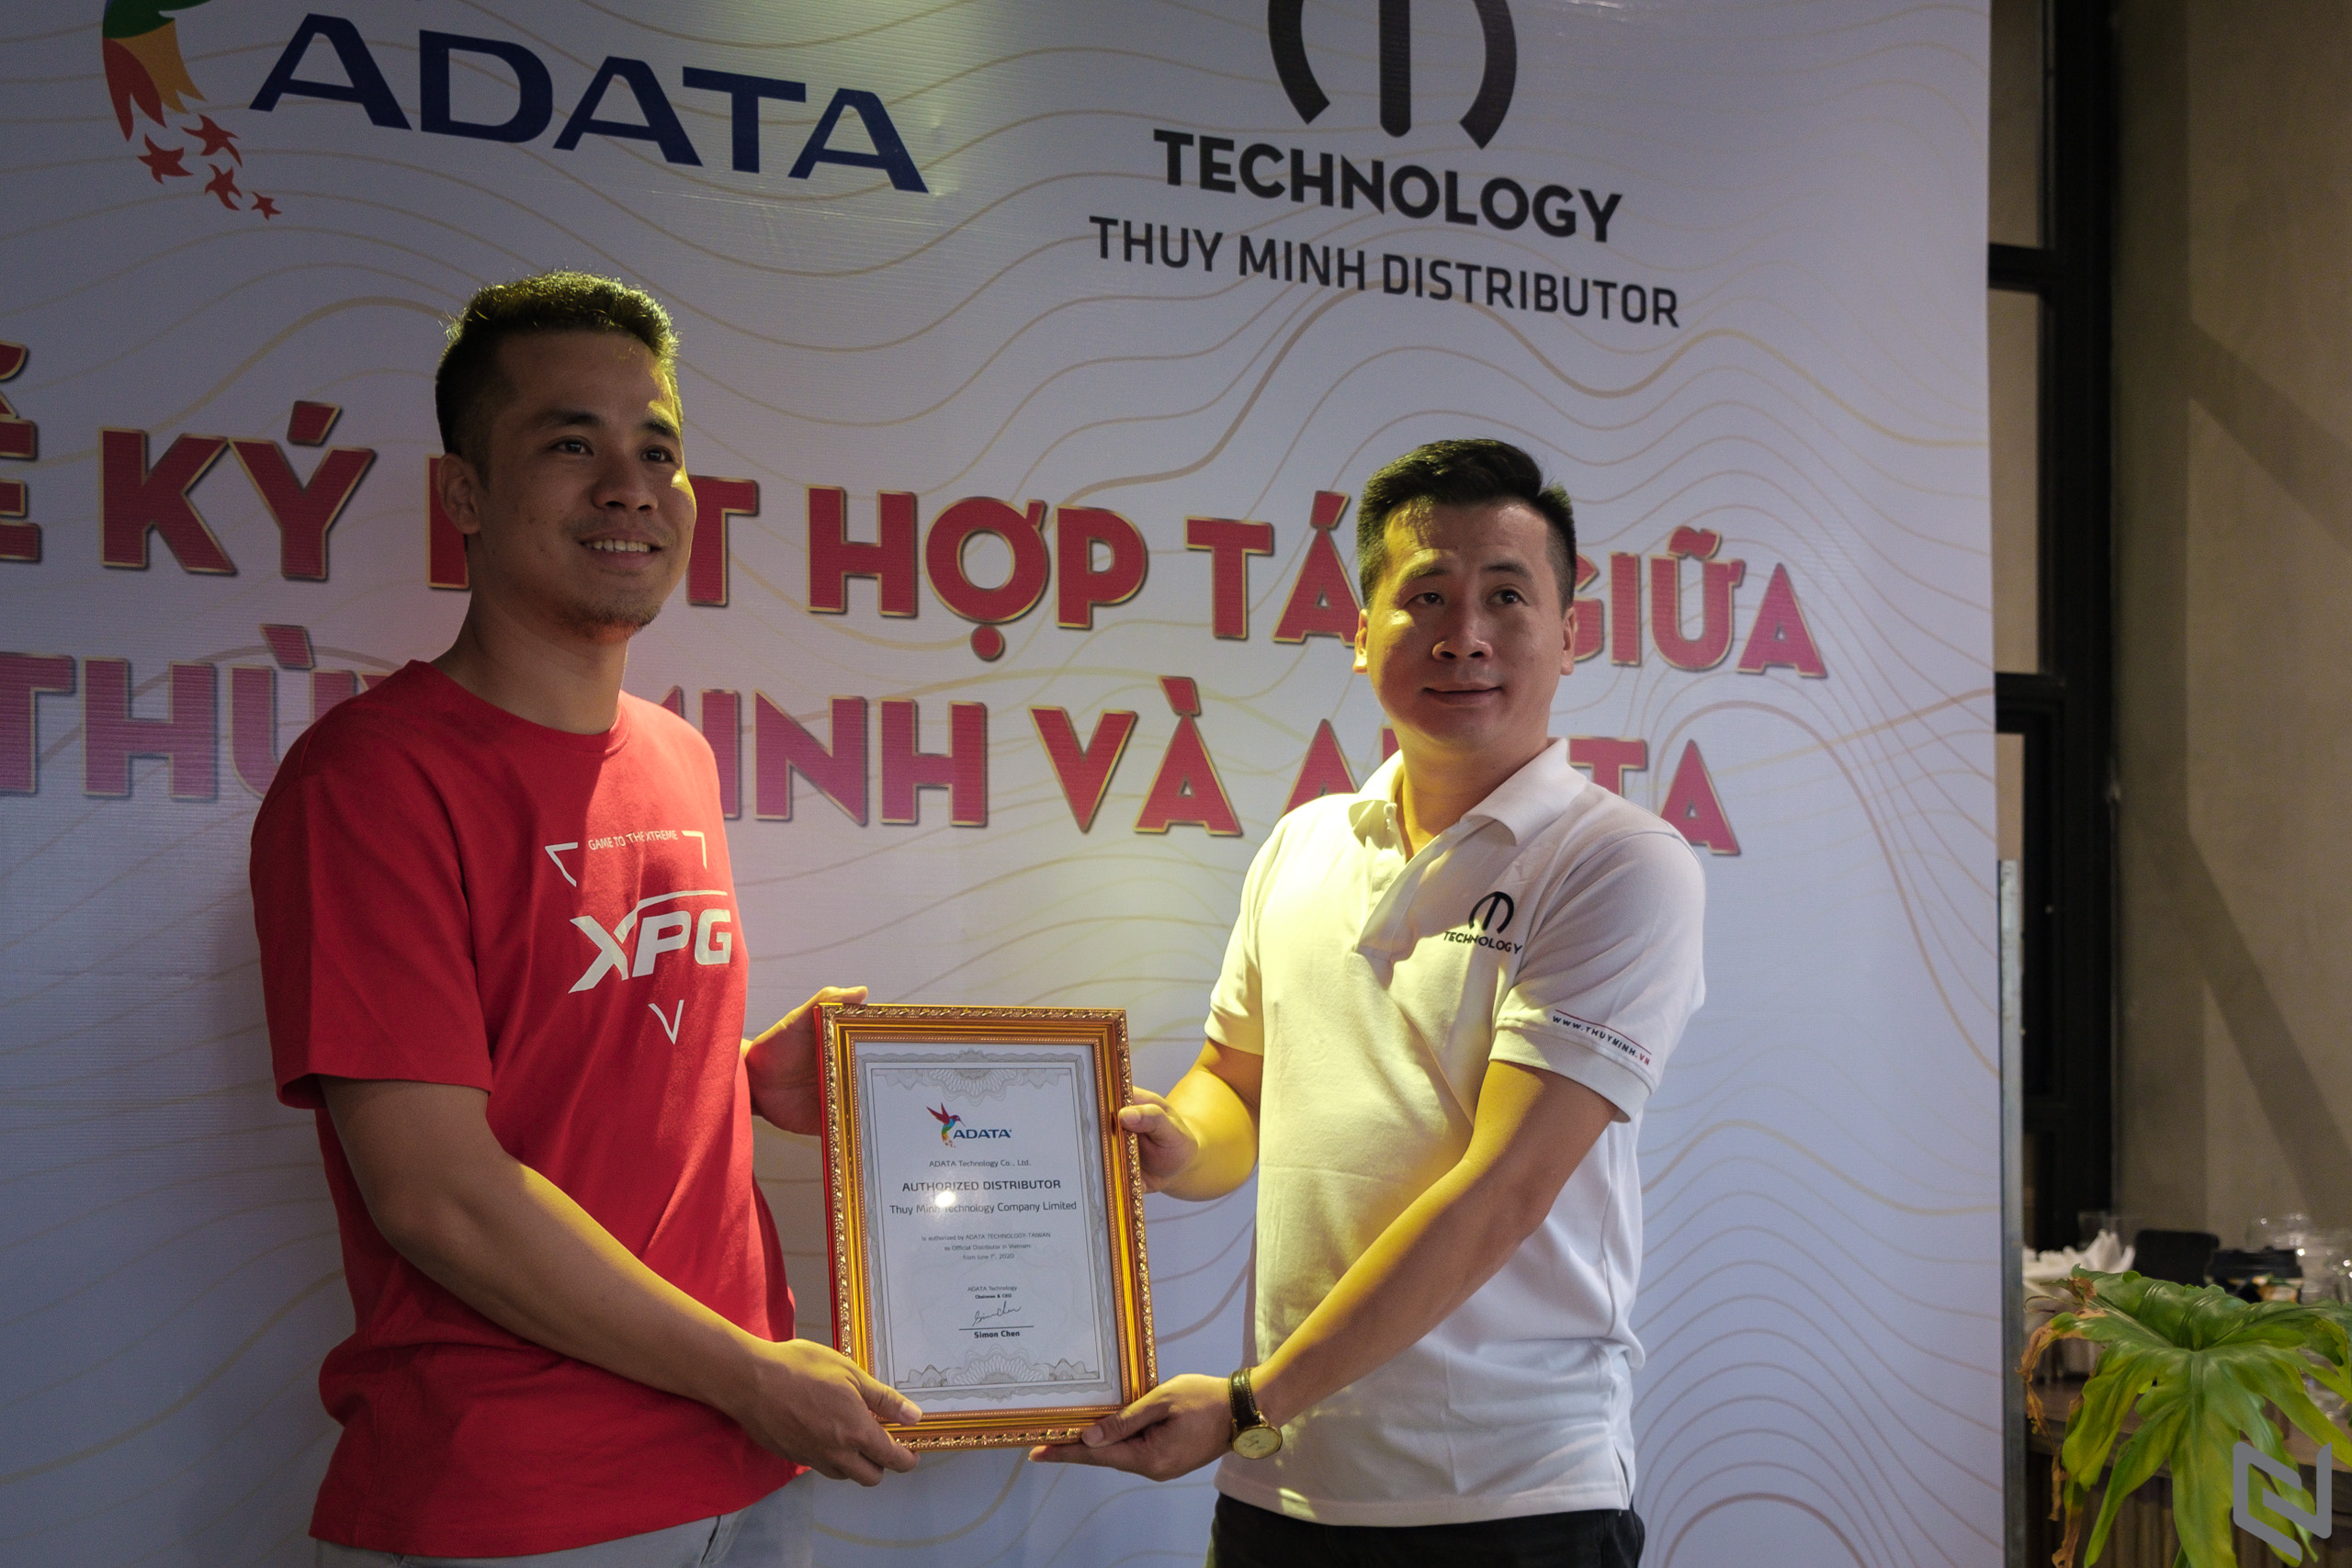 Thuỳ Minh Technology trở thành nhà phân phối các sản phẩm ADATA tại Việt Nam